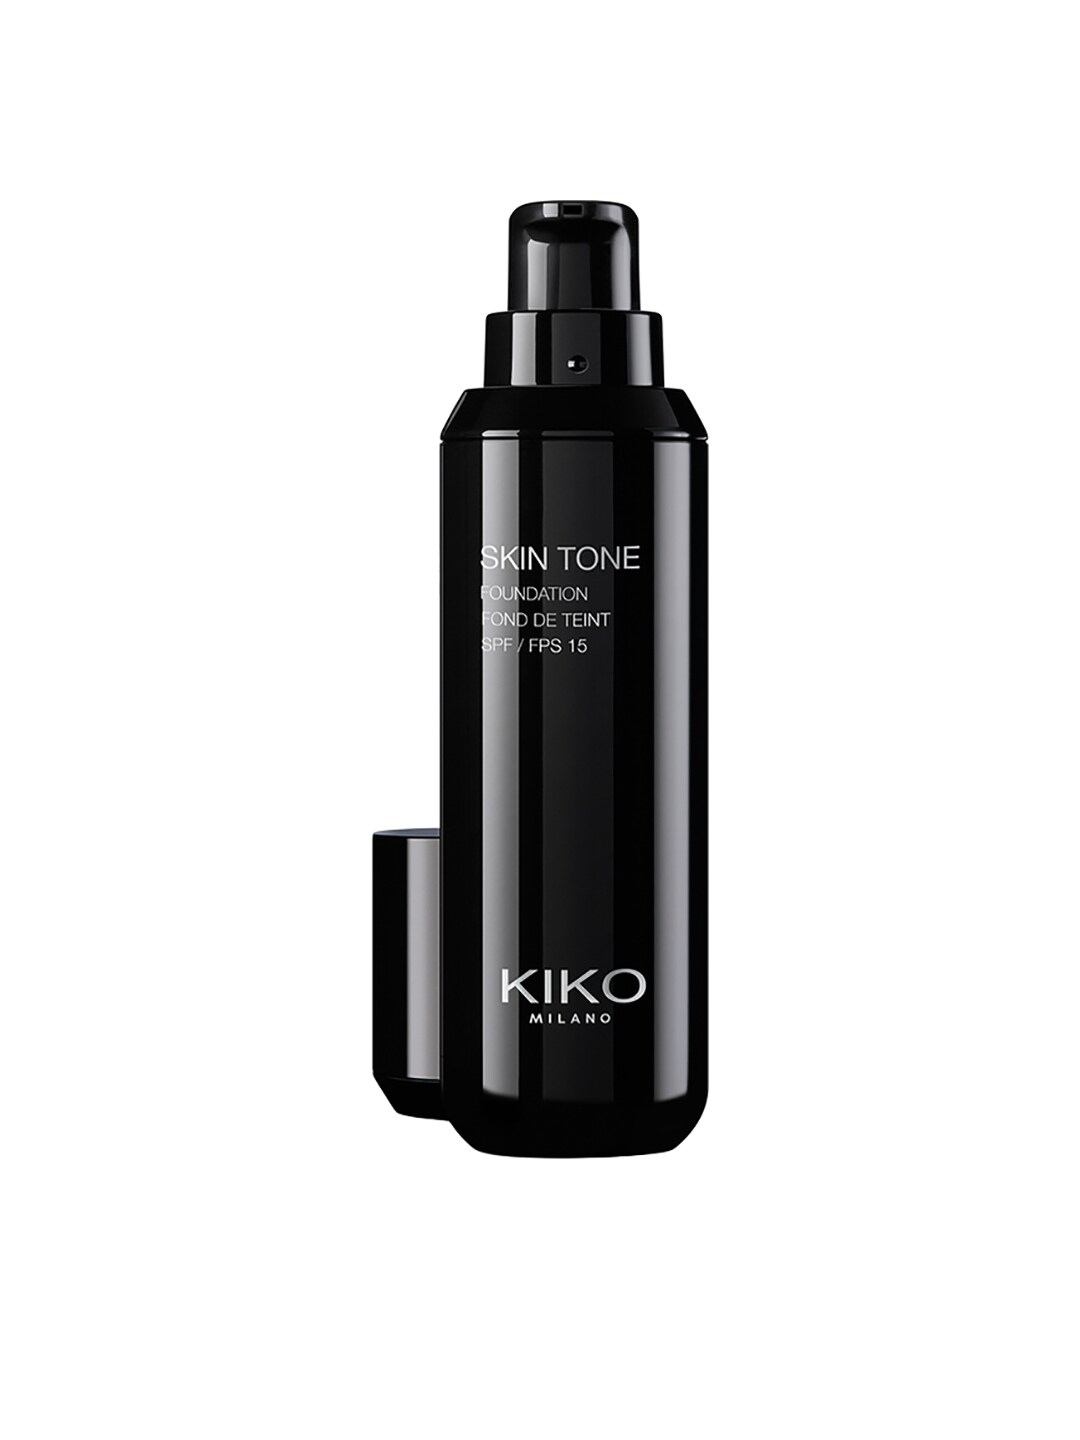 KIKO MILANO Skin Tone SPF 15 Foundation WB40 30ml Price in India